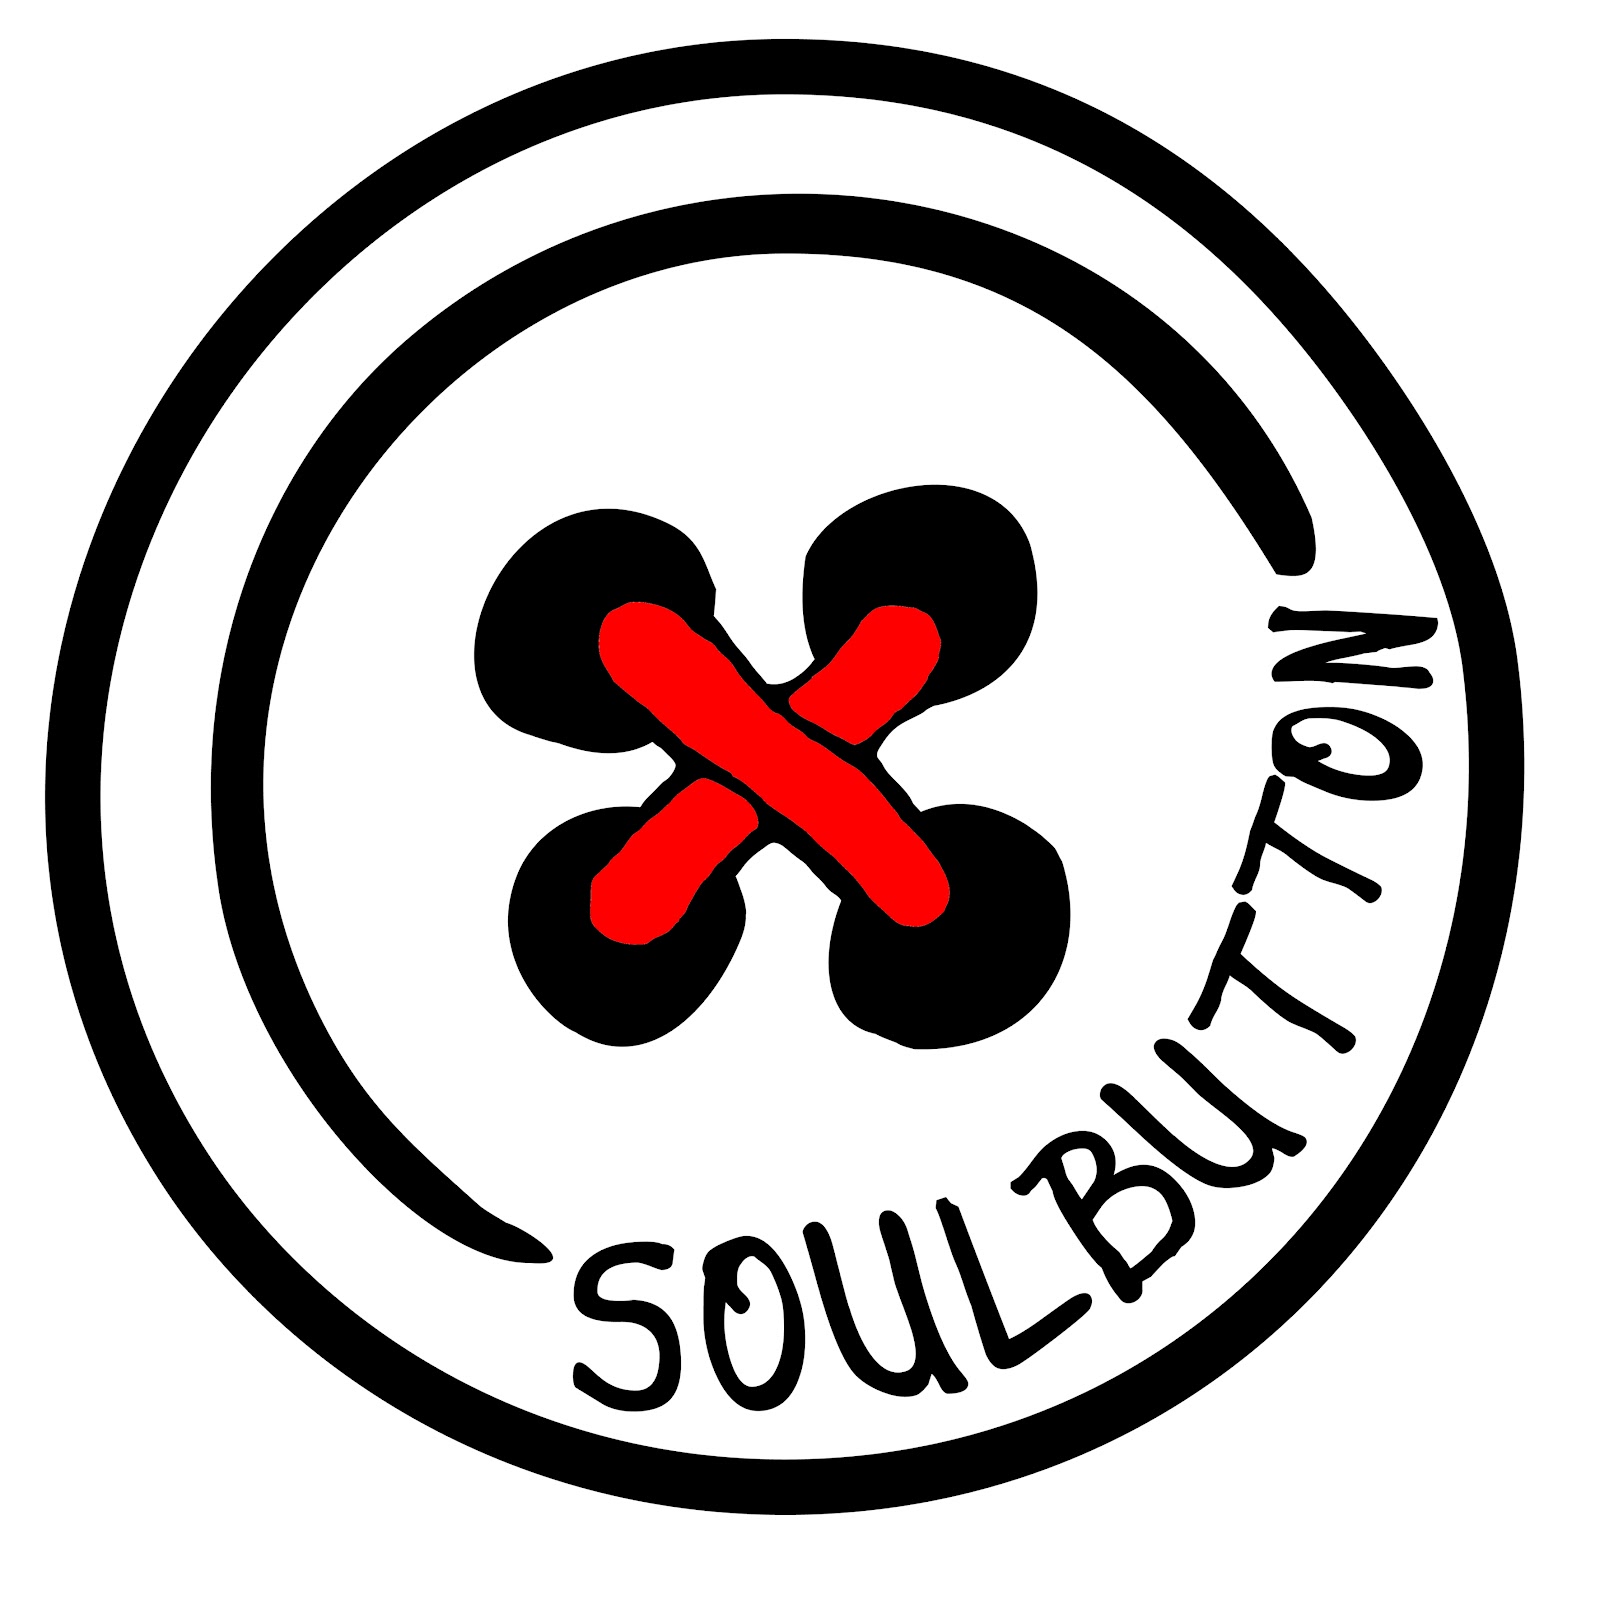 Interview #3: Soul Button